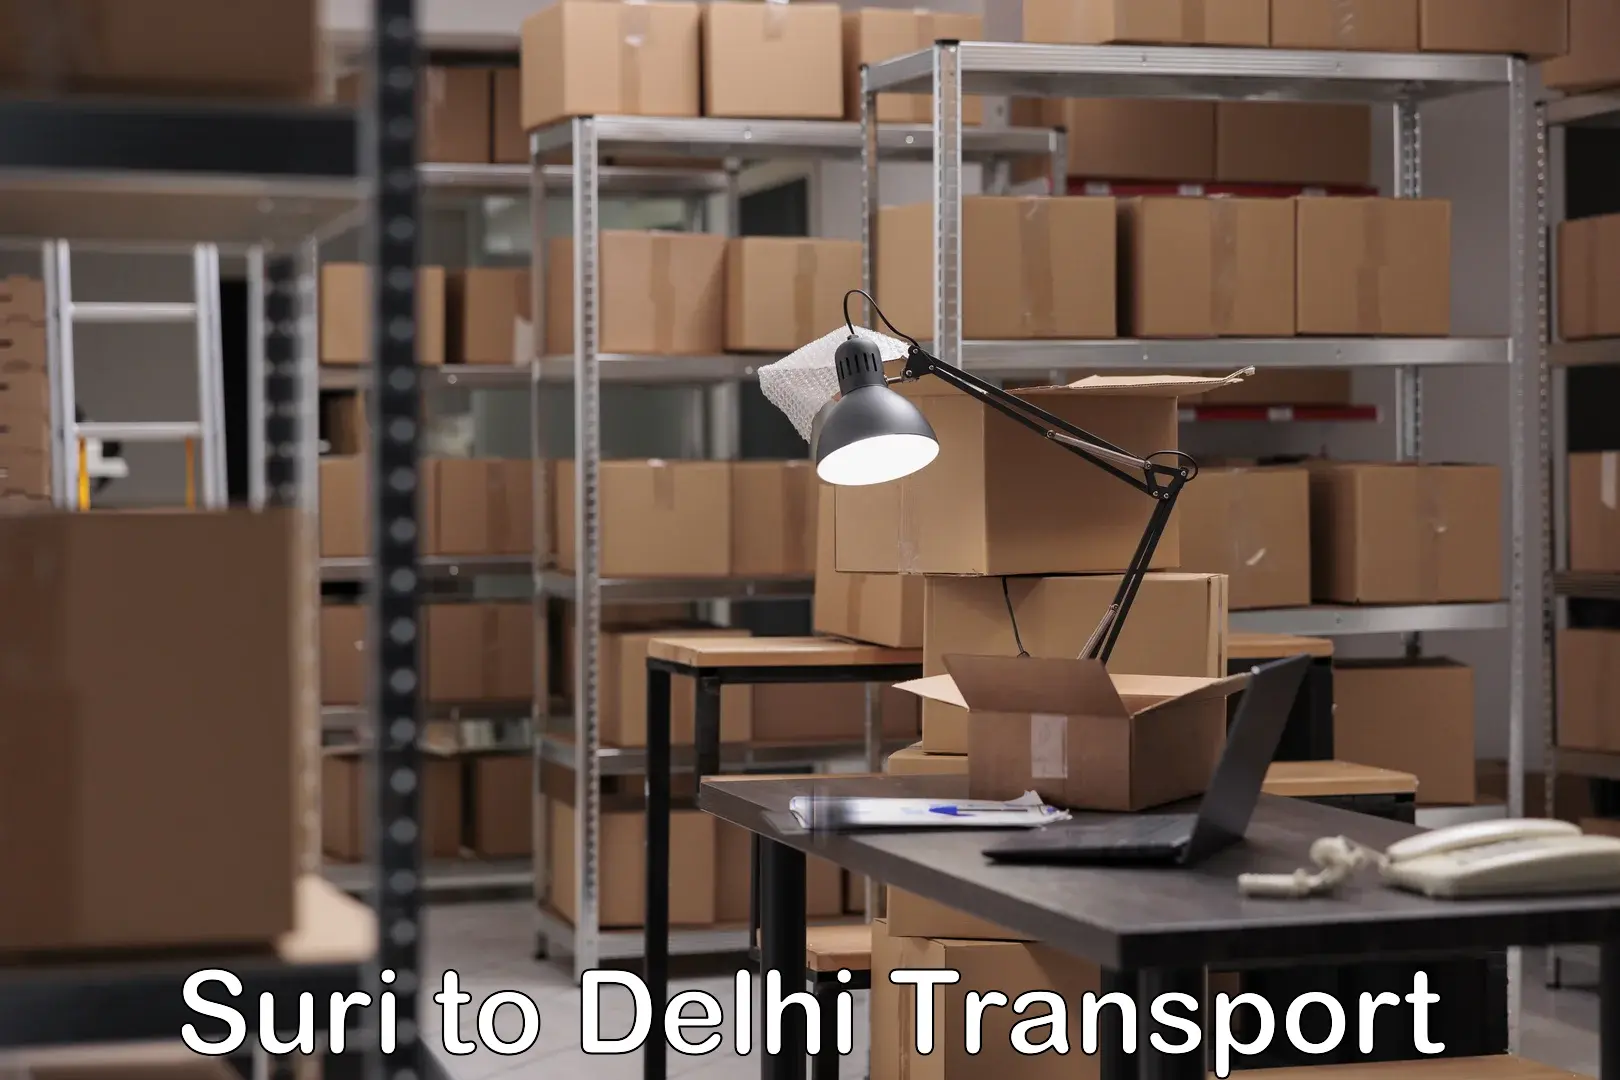 Cargo train transport services Suri to Delhi